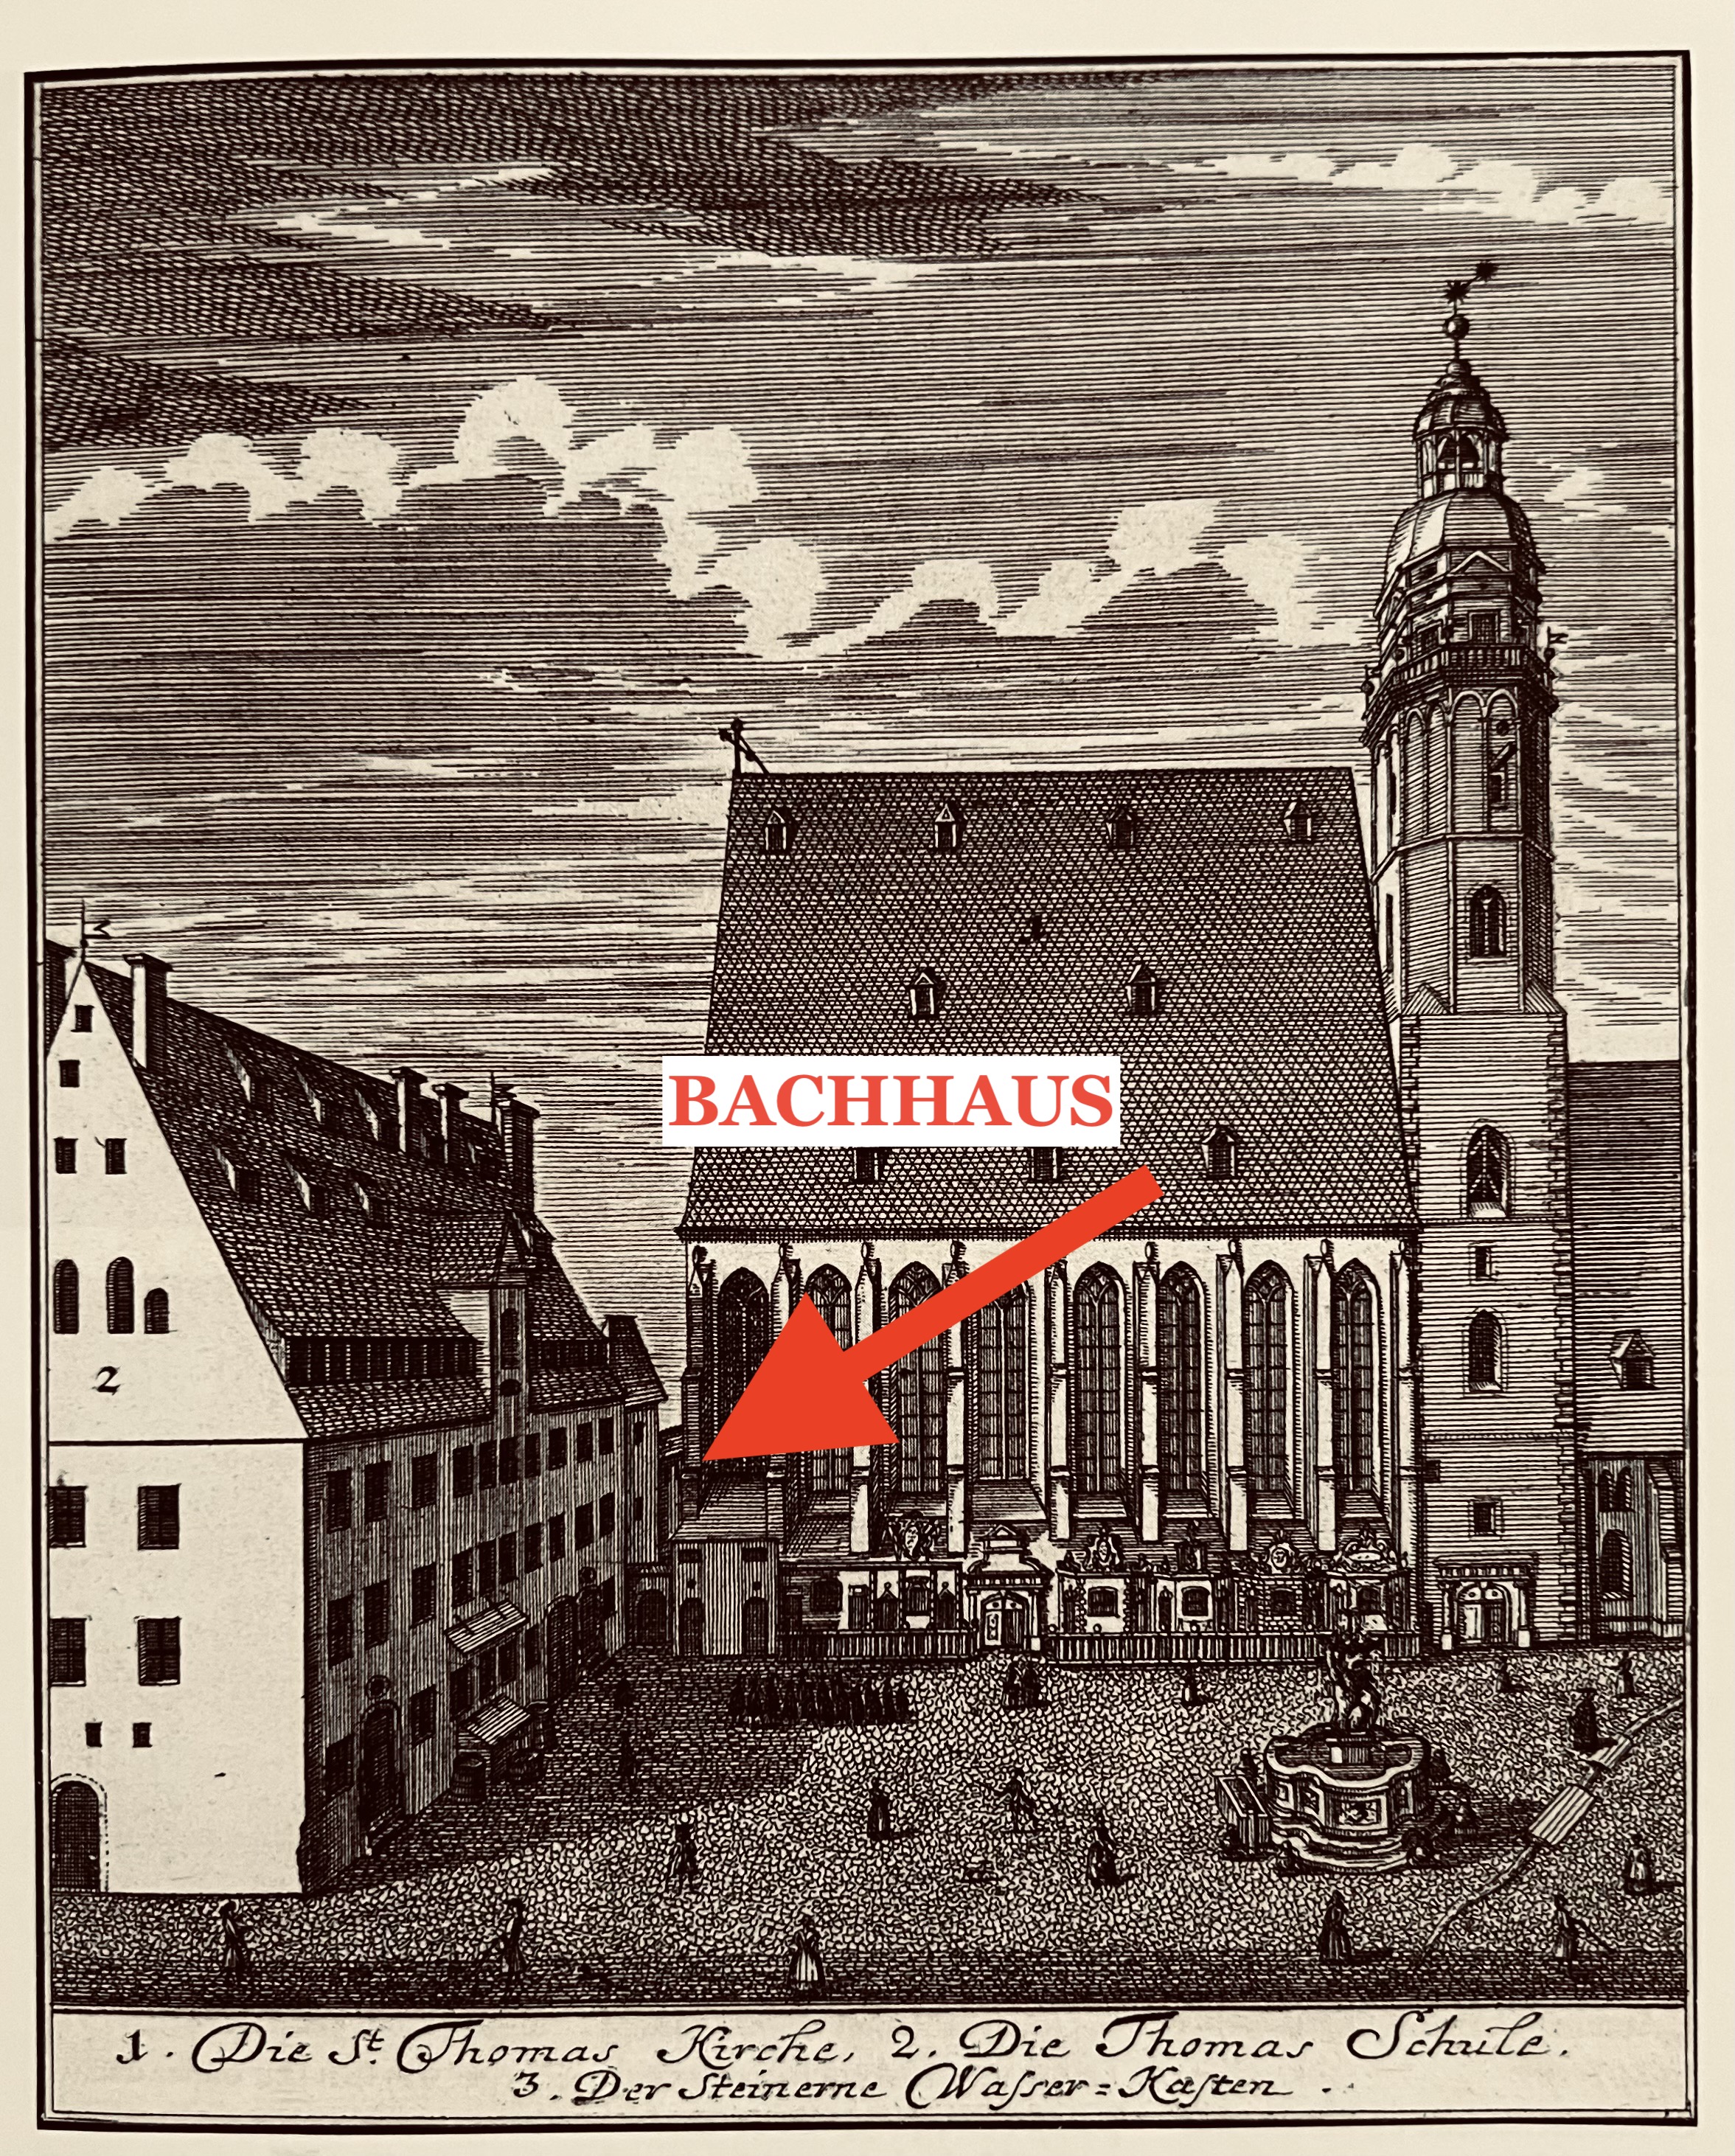 Bachhaus titel